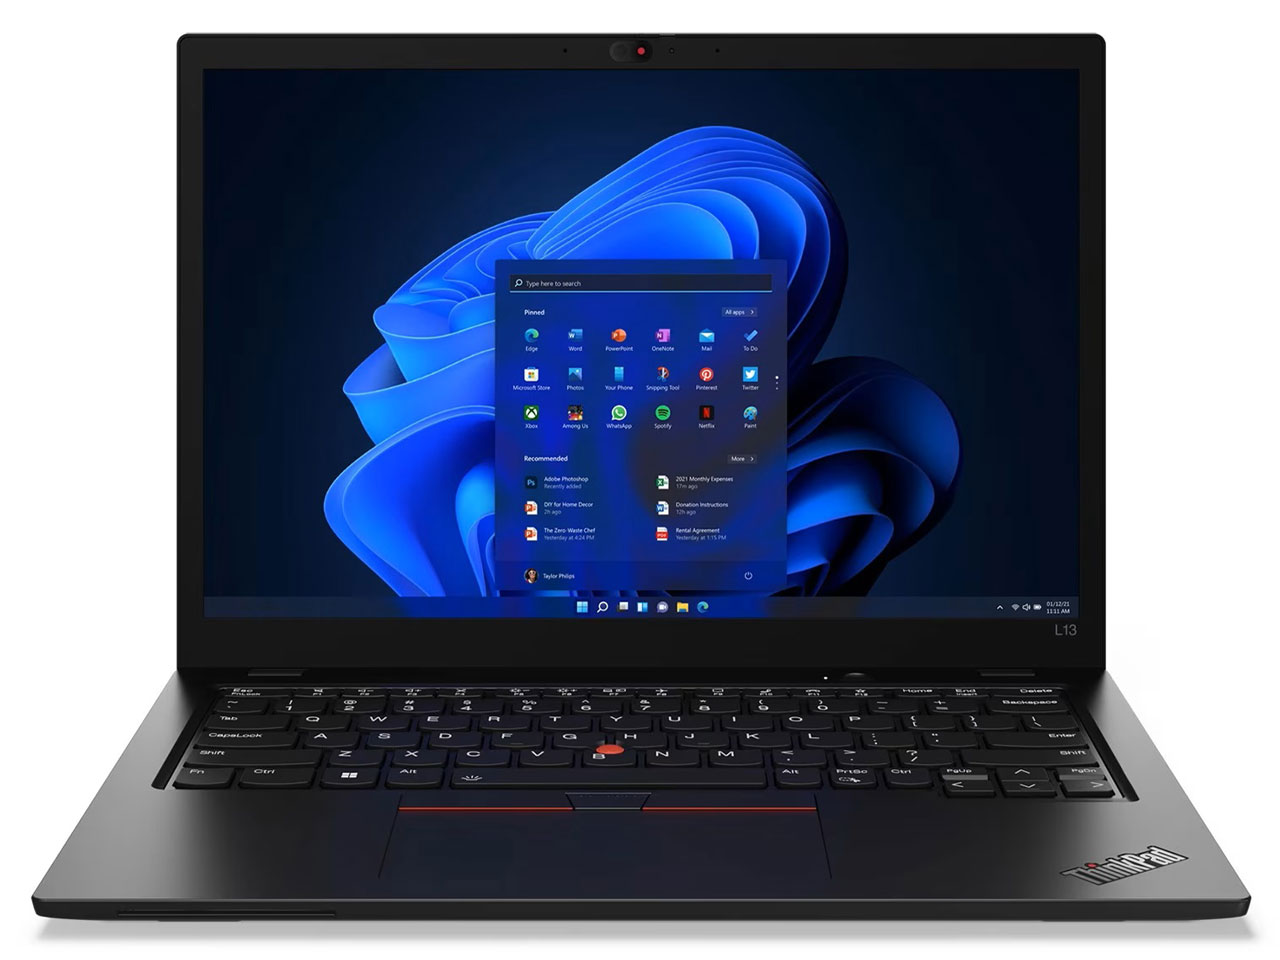 ThinkPad L13 Gen 3 21B3001SJP [ブラック]